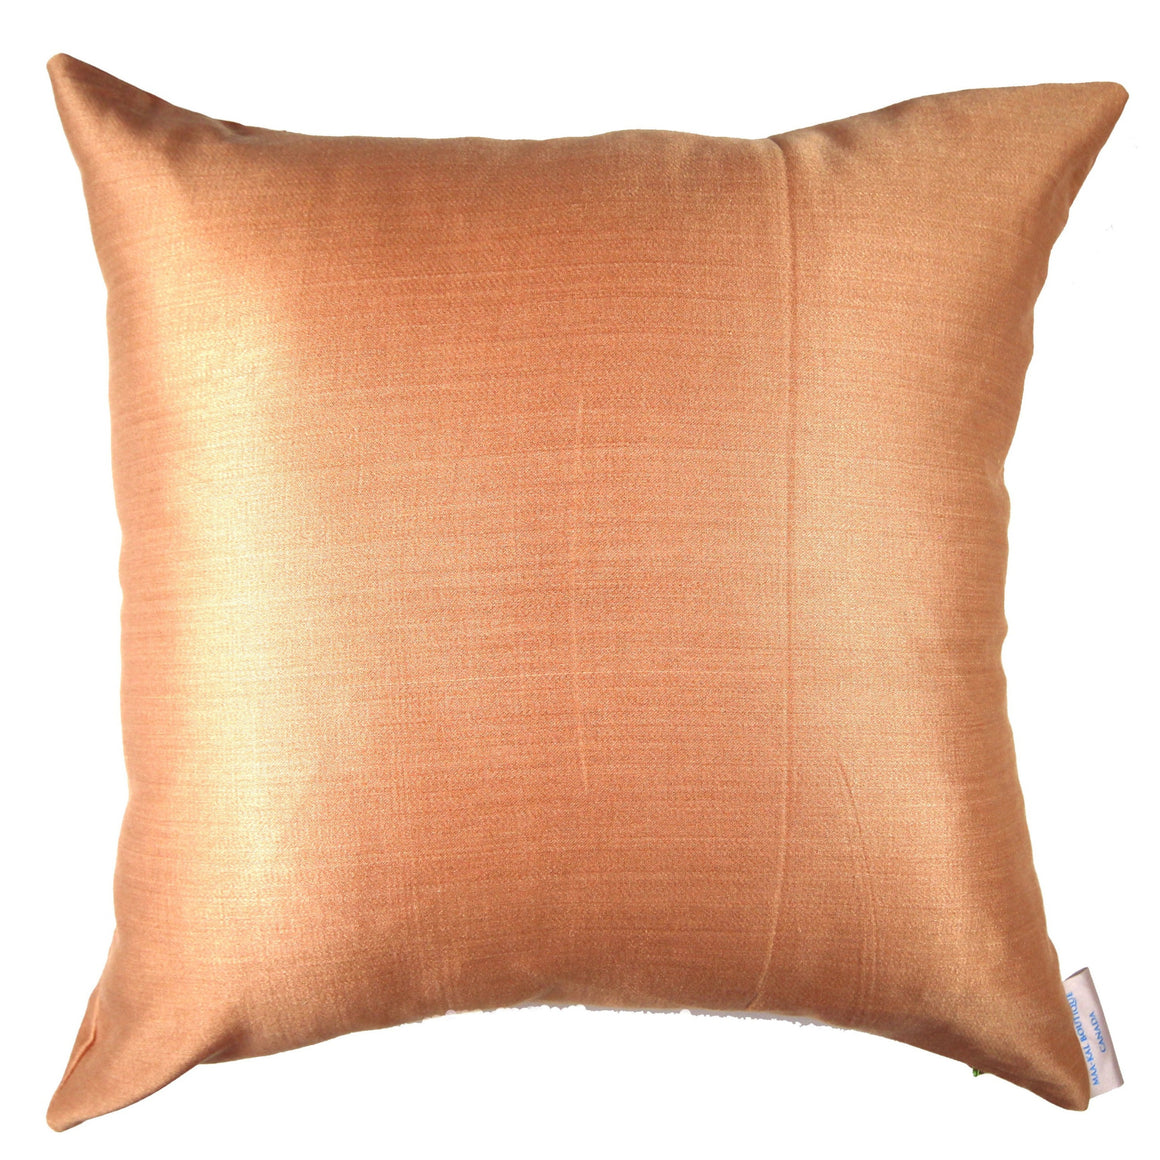 Anita - Orange Pillow Cover - 20x20 - Maa-Kal Boutique Canada